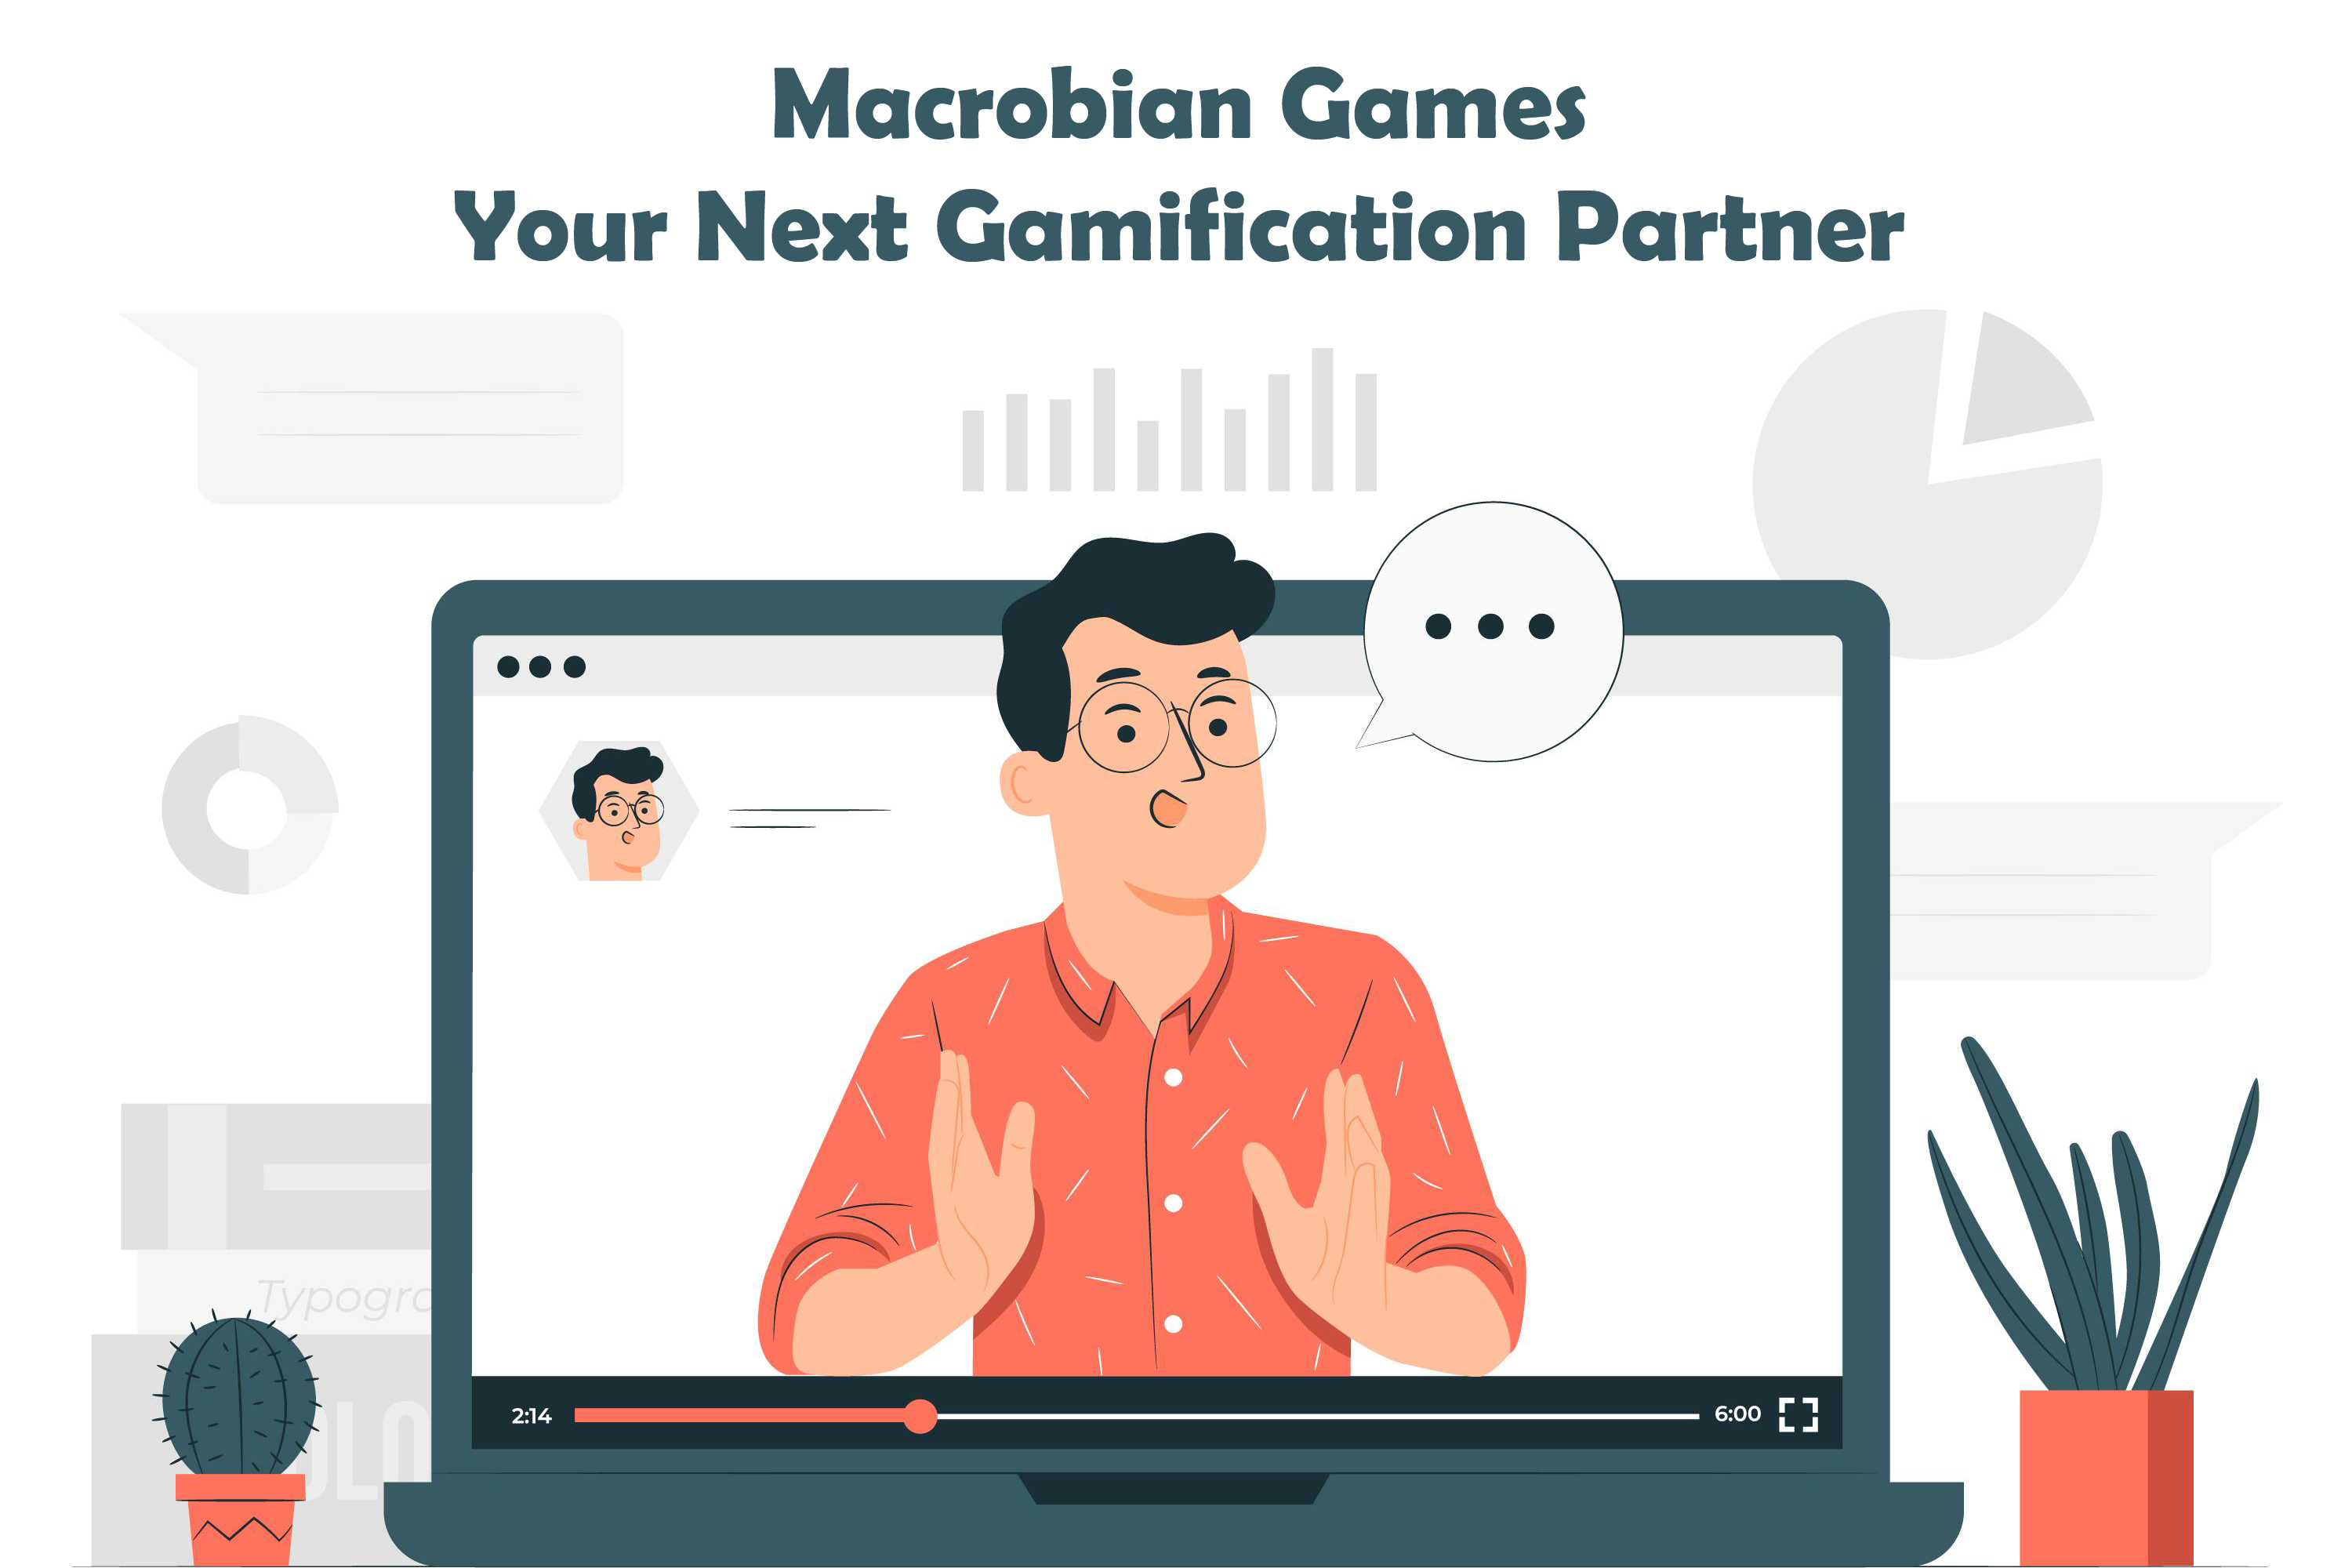 Why Choose Macrobian Games?